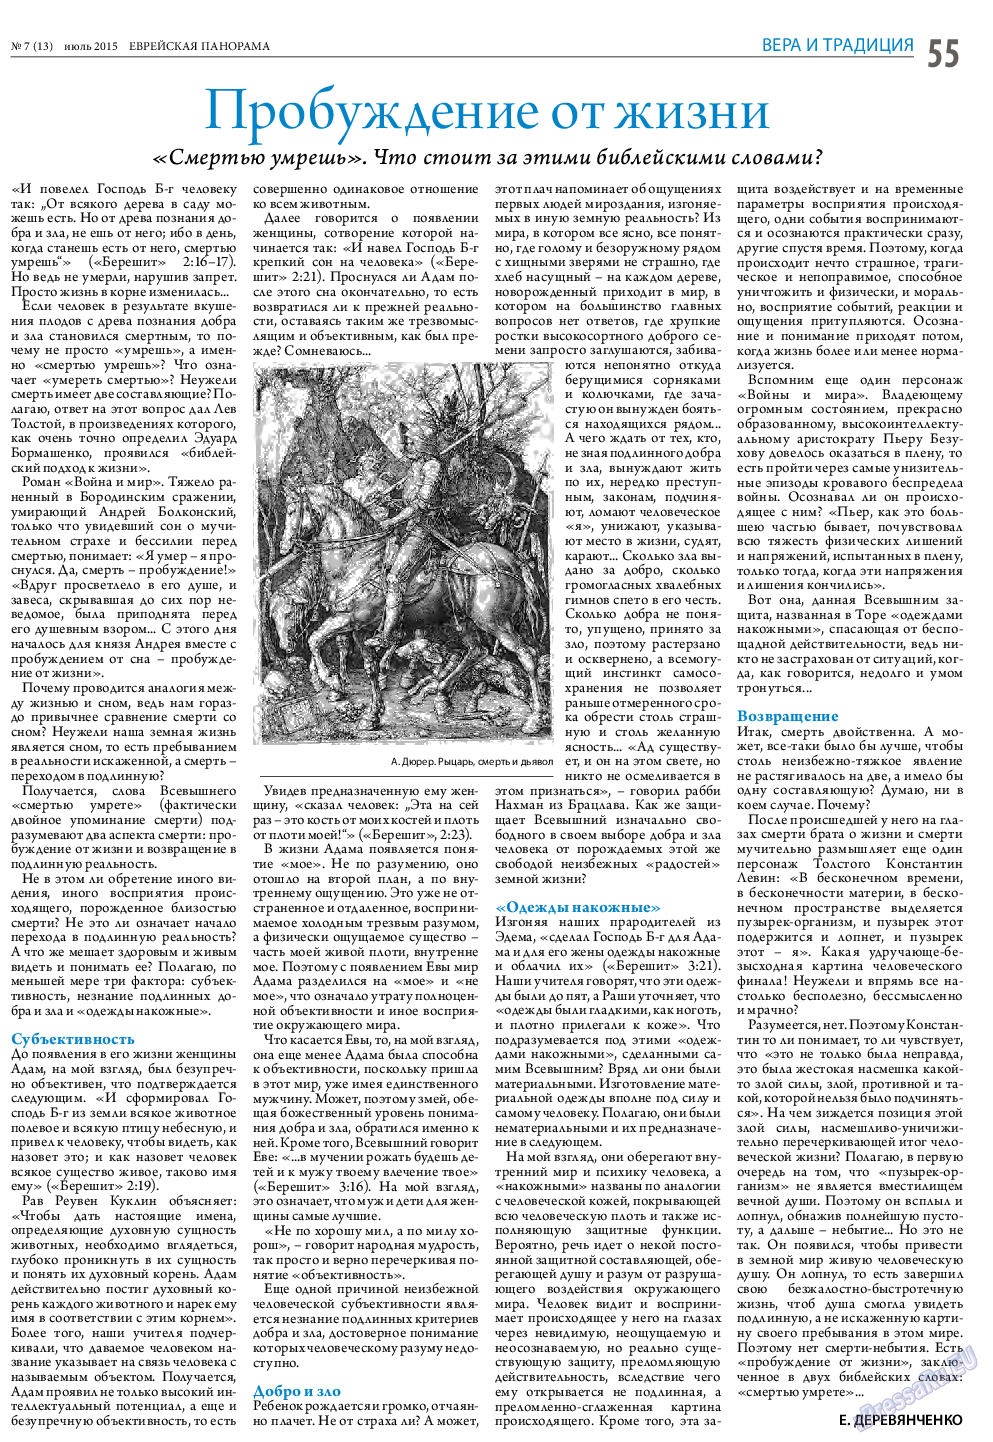 Еврейская панорама (газета). 2015 год, номер 7, стр. 55